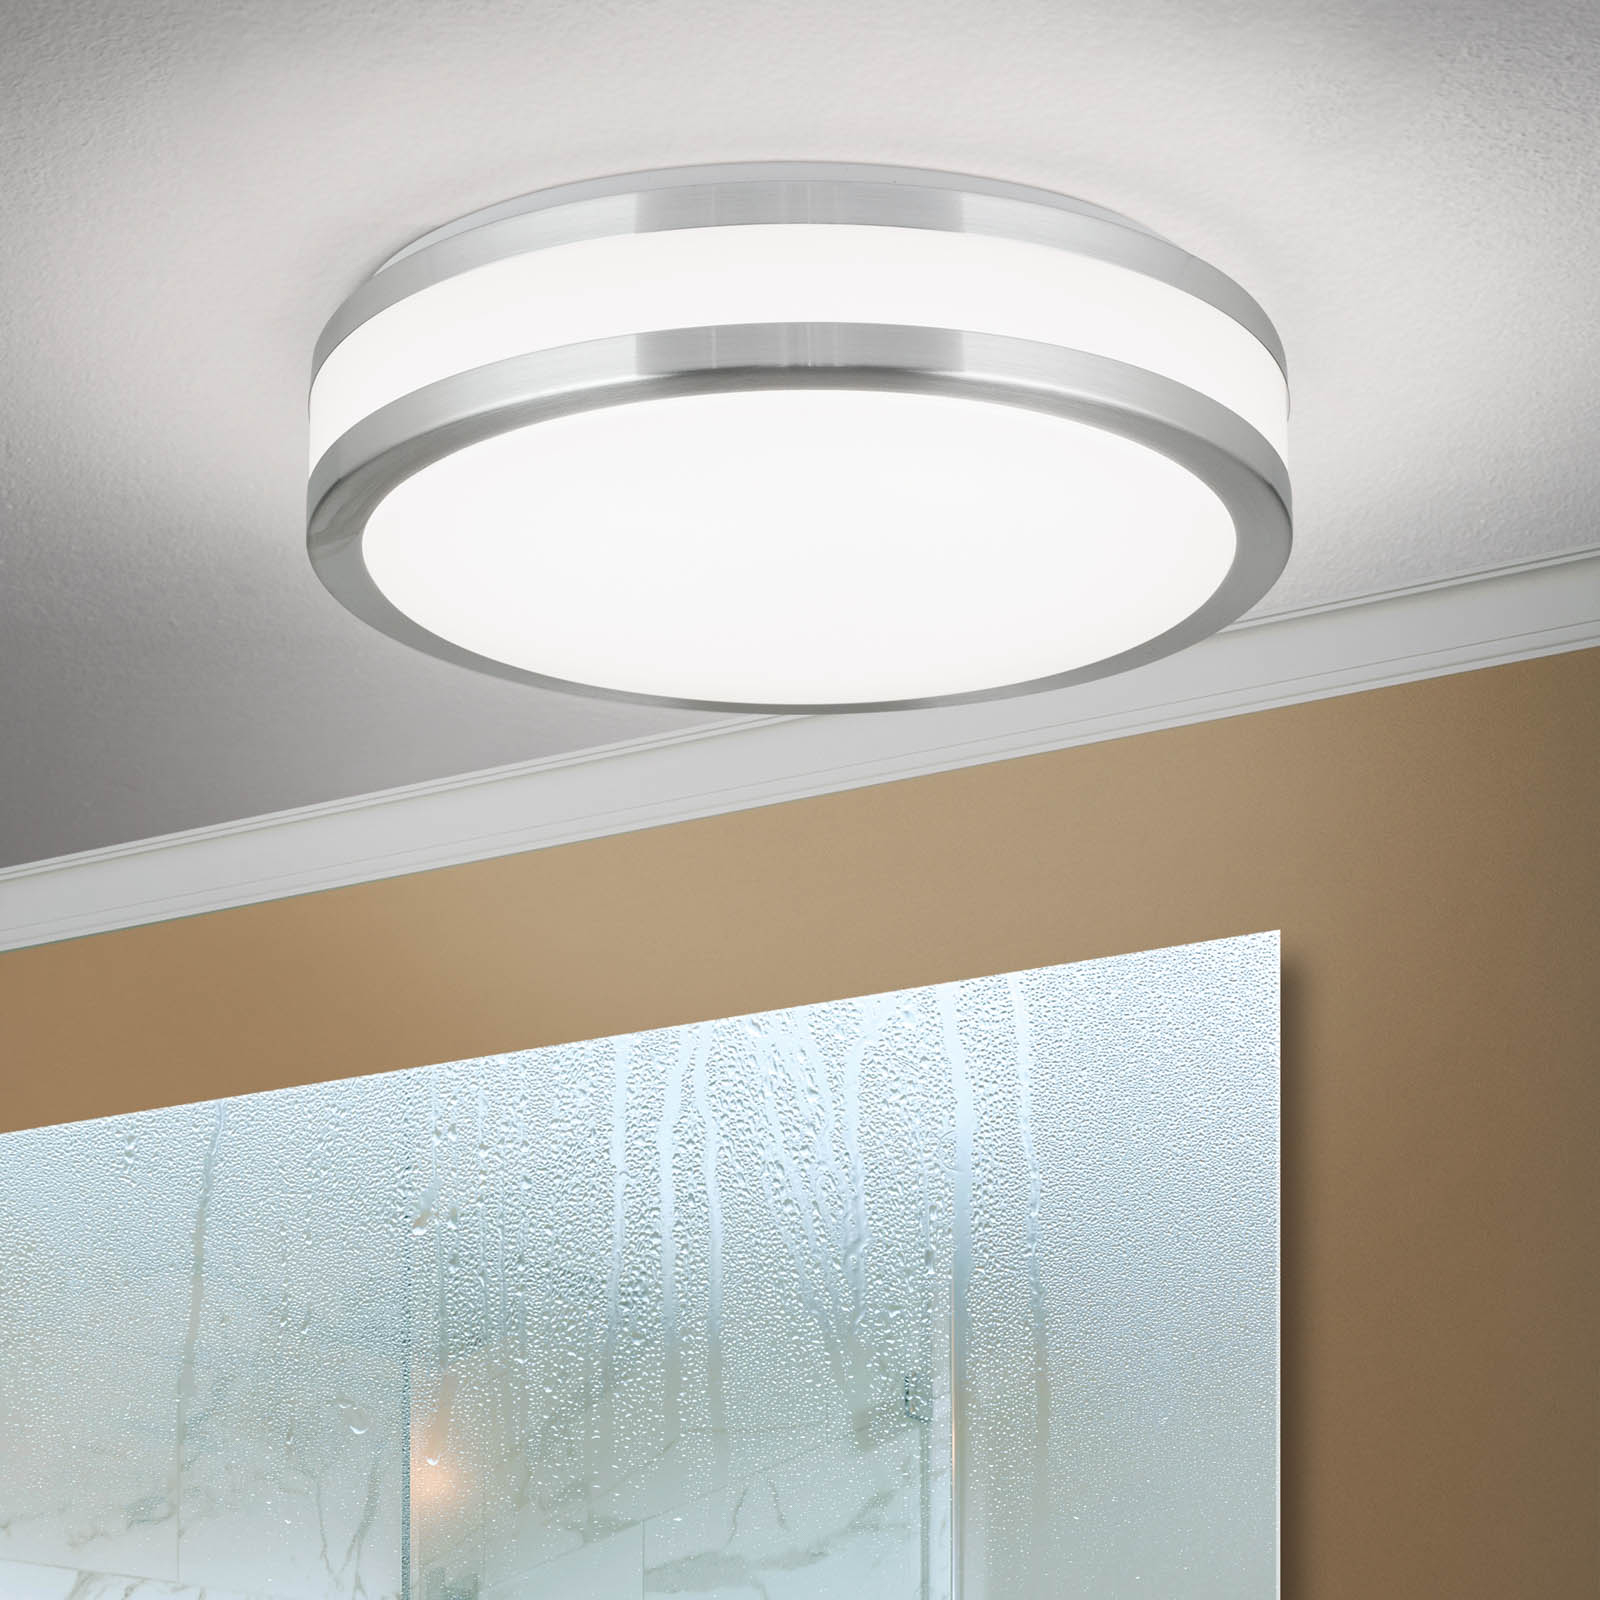 LED ceiling light Nedo cylindrical, Ø 28.5 cm